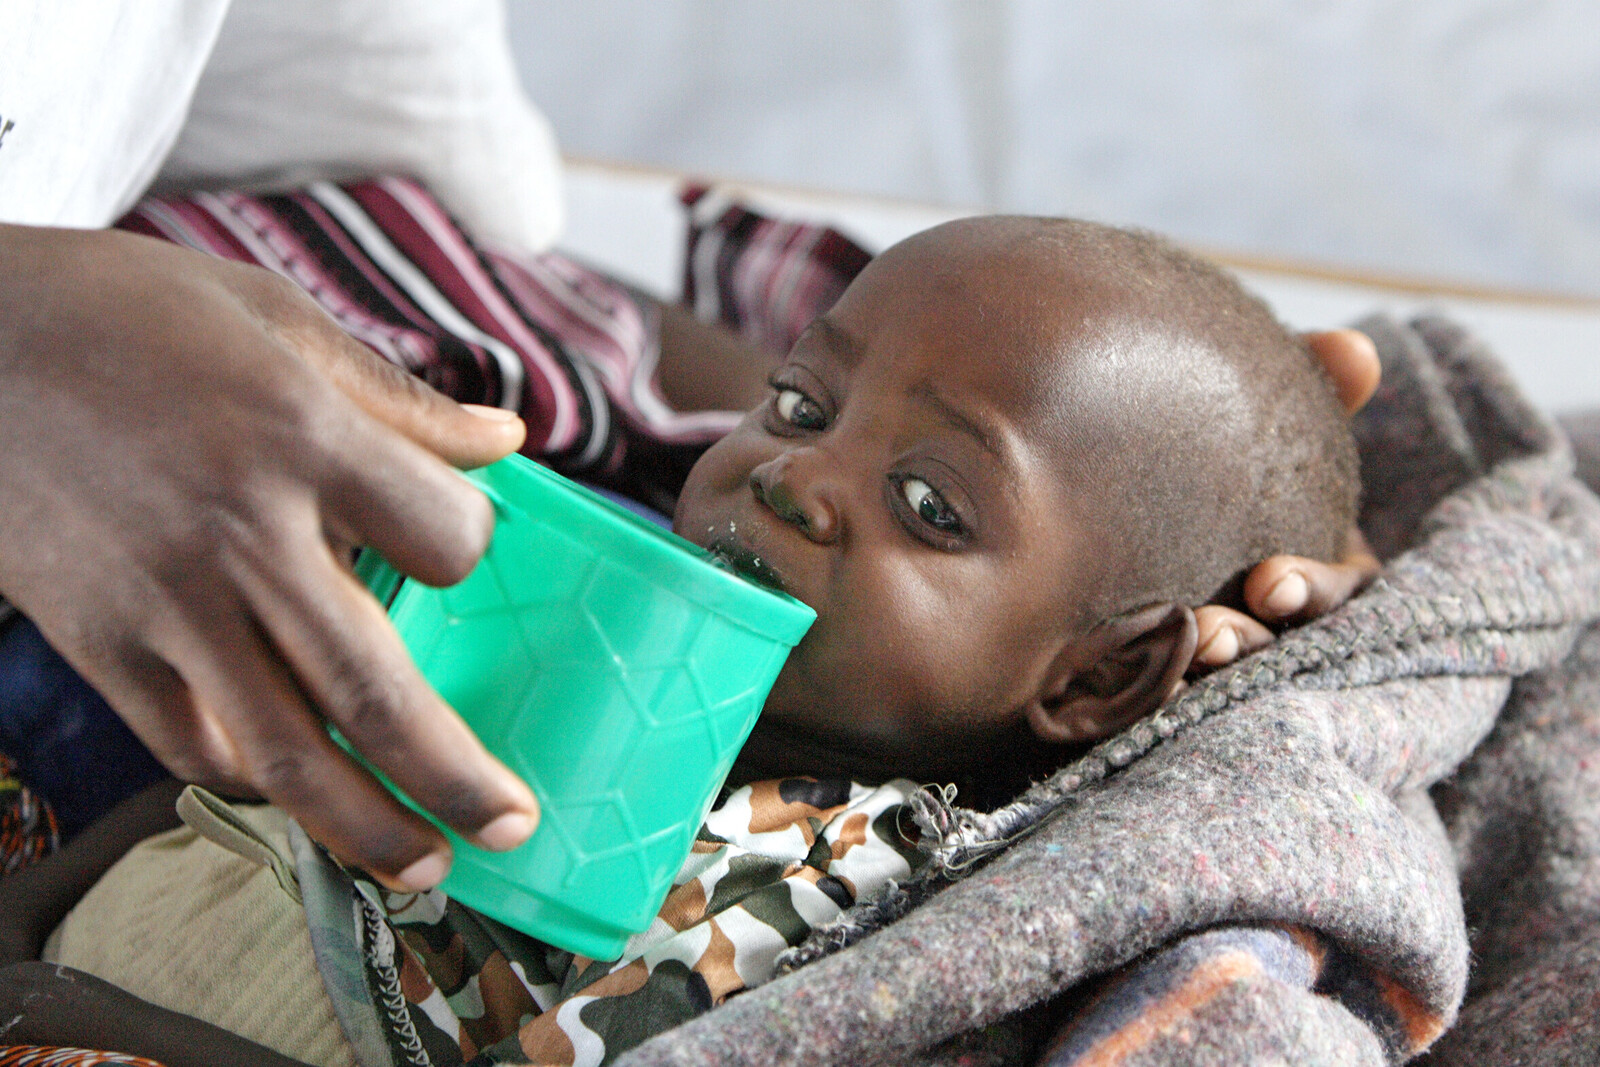 Bei Hungersnöten sind es meist die Kinder, die mit schwerer Unterernährung zu kämpfen haben. Das hat Auswirkungen auf das Wachstum und endet in vielen Fällen tödlich.